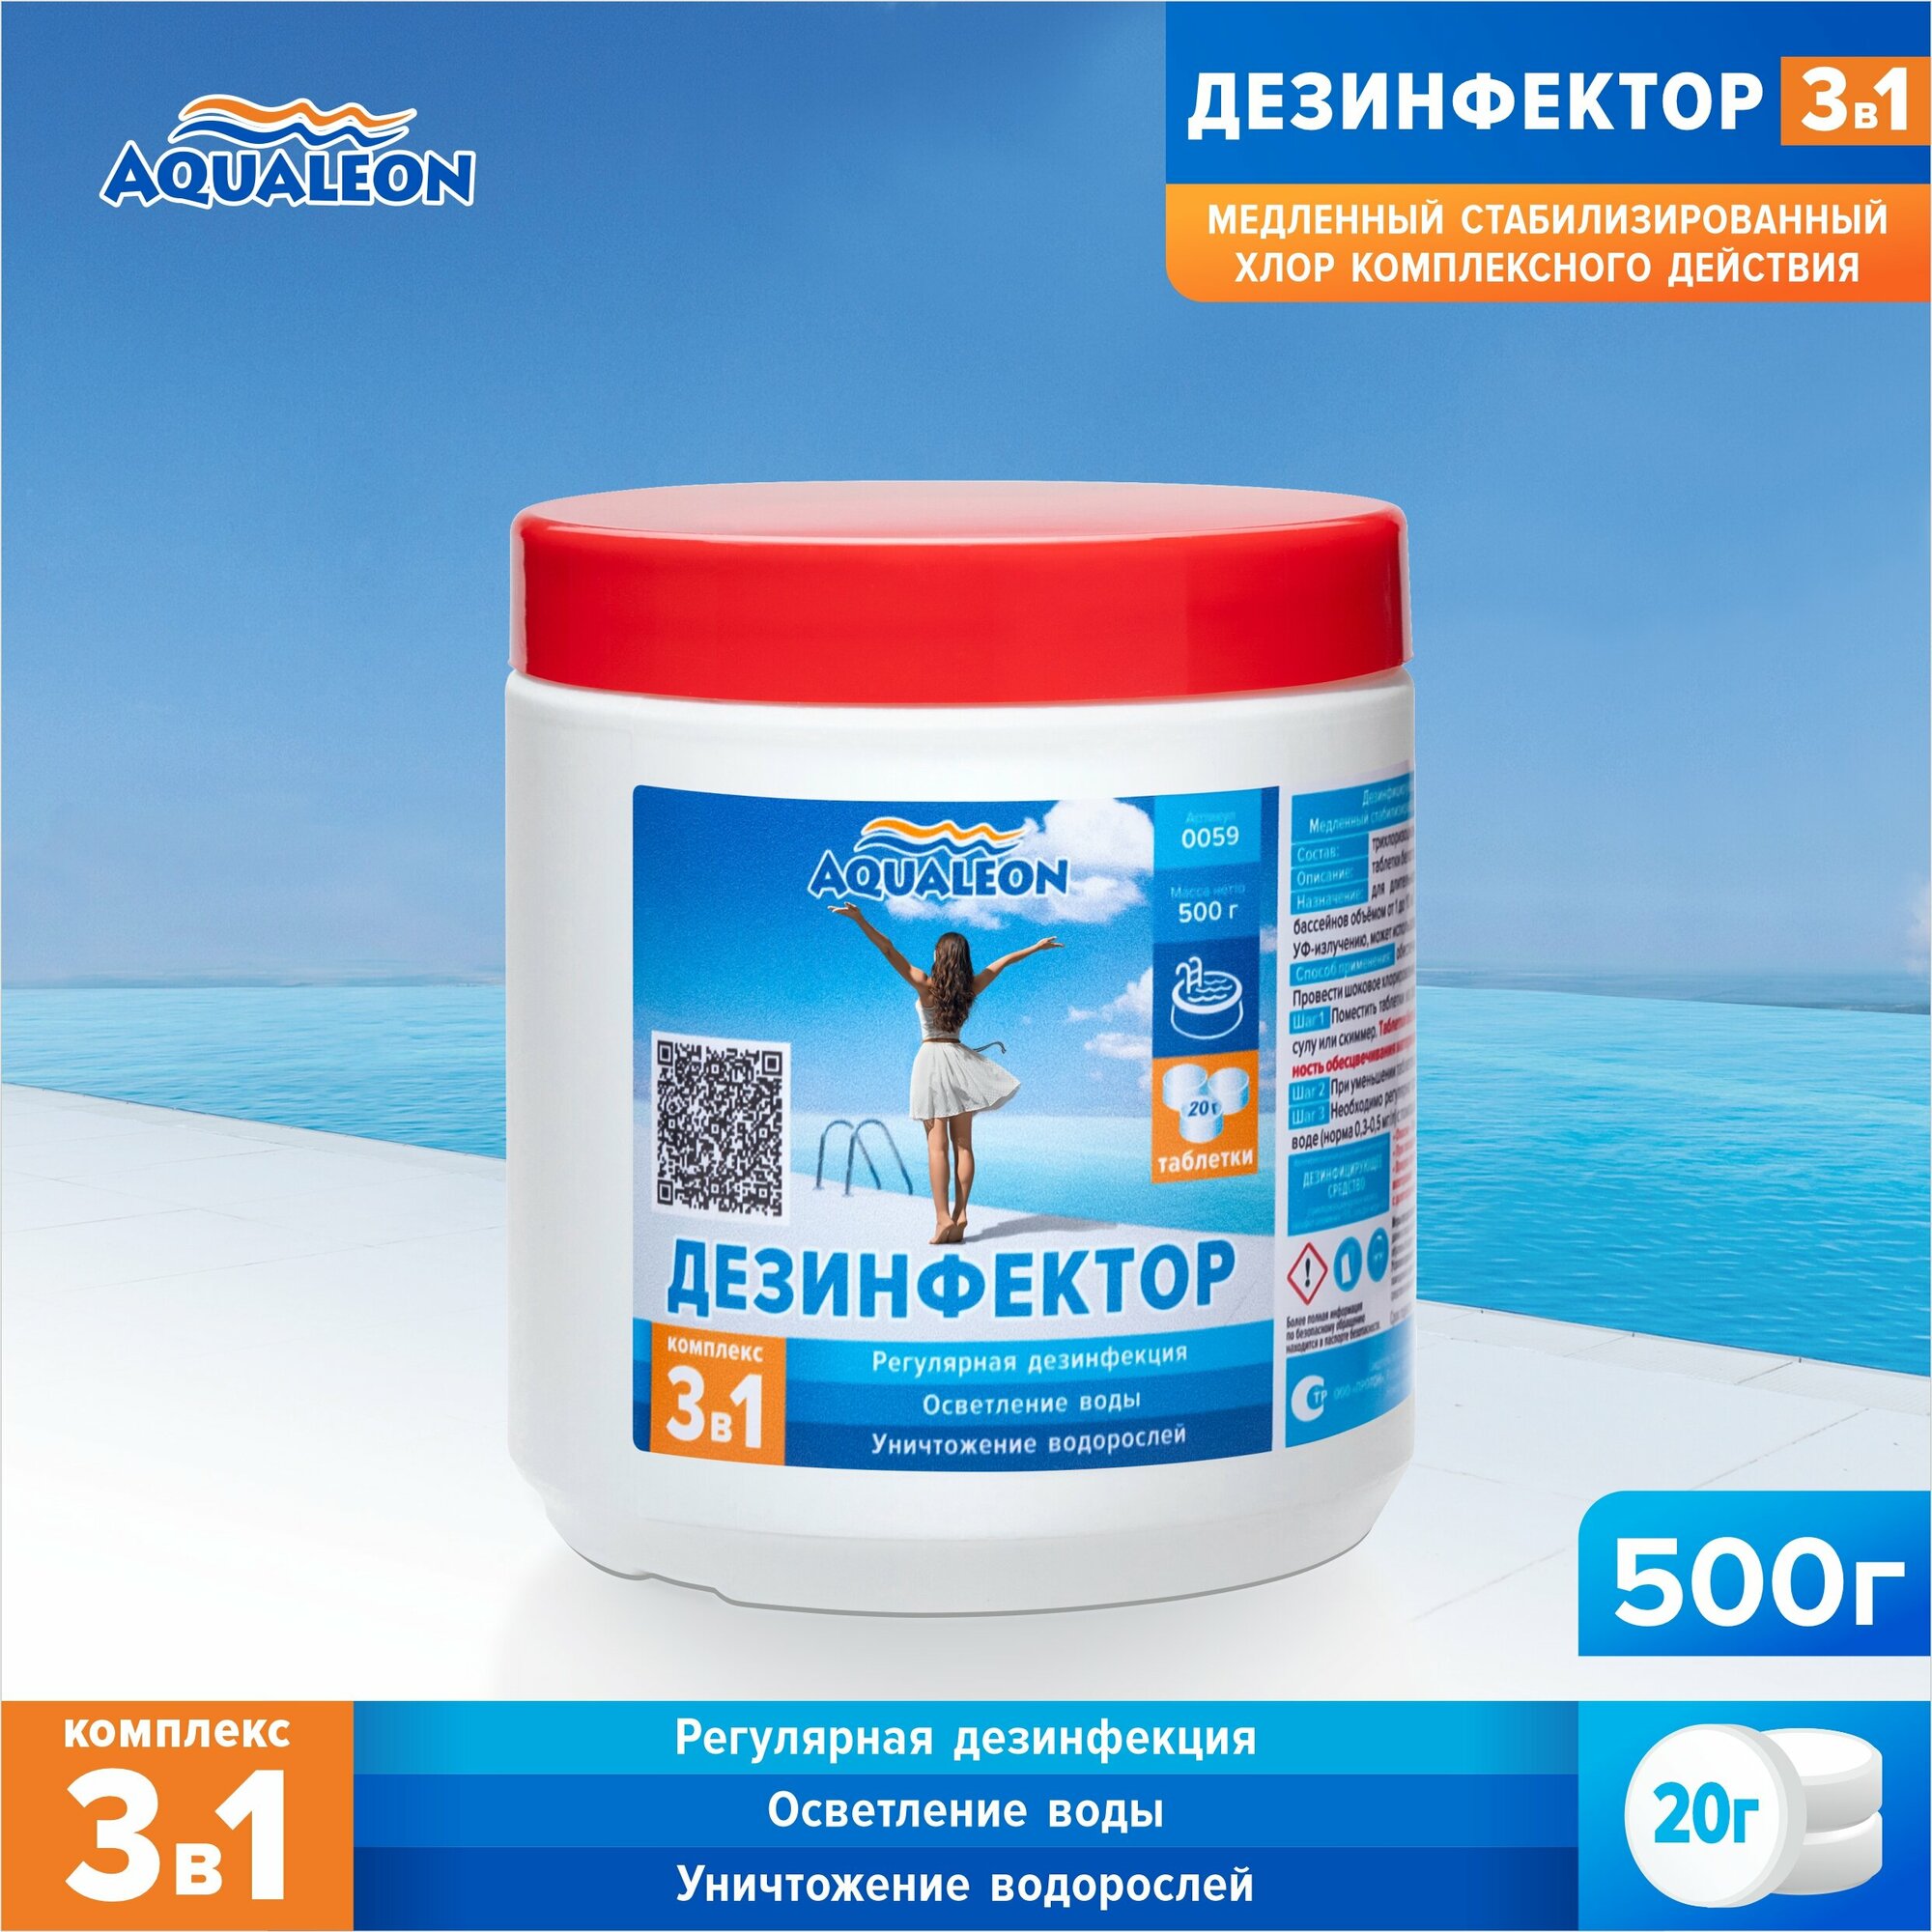 Дезинфектор Aqualeon медленный хлор 3 в 1 в таблетках по 20 гр., 0,5 кг